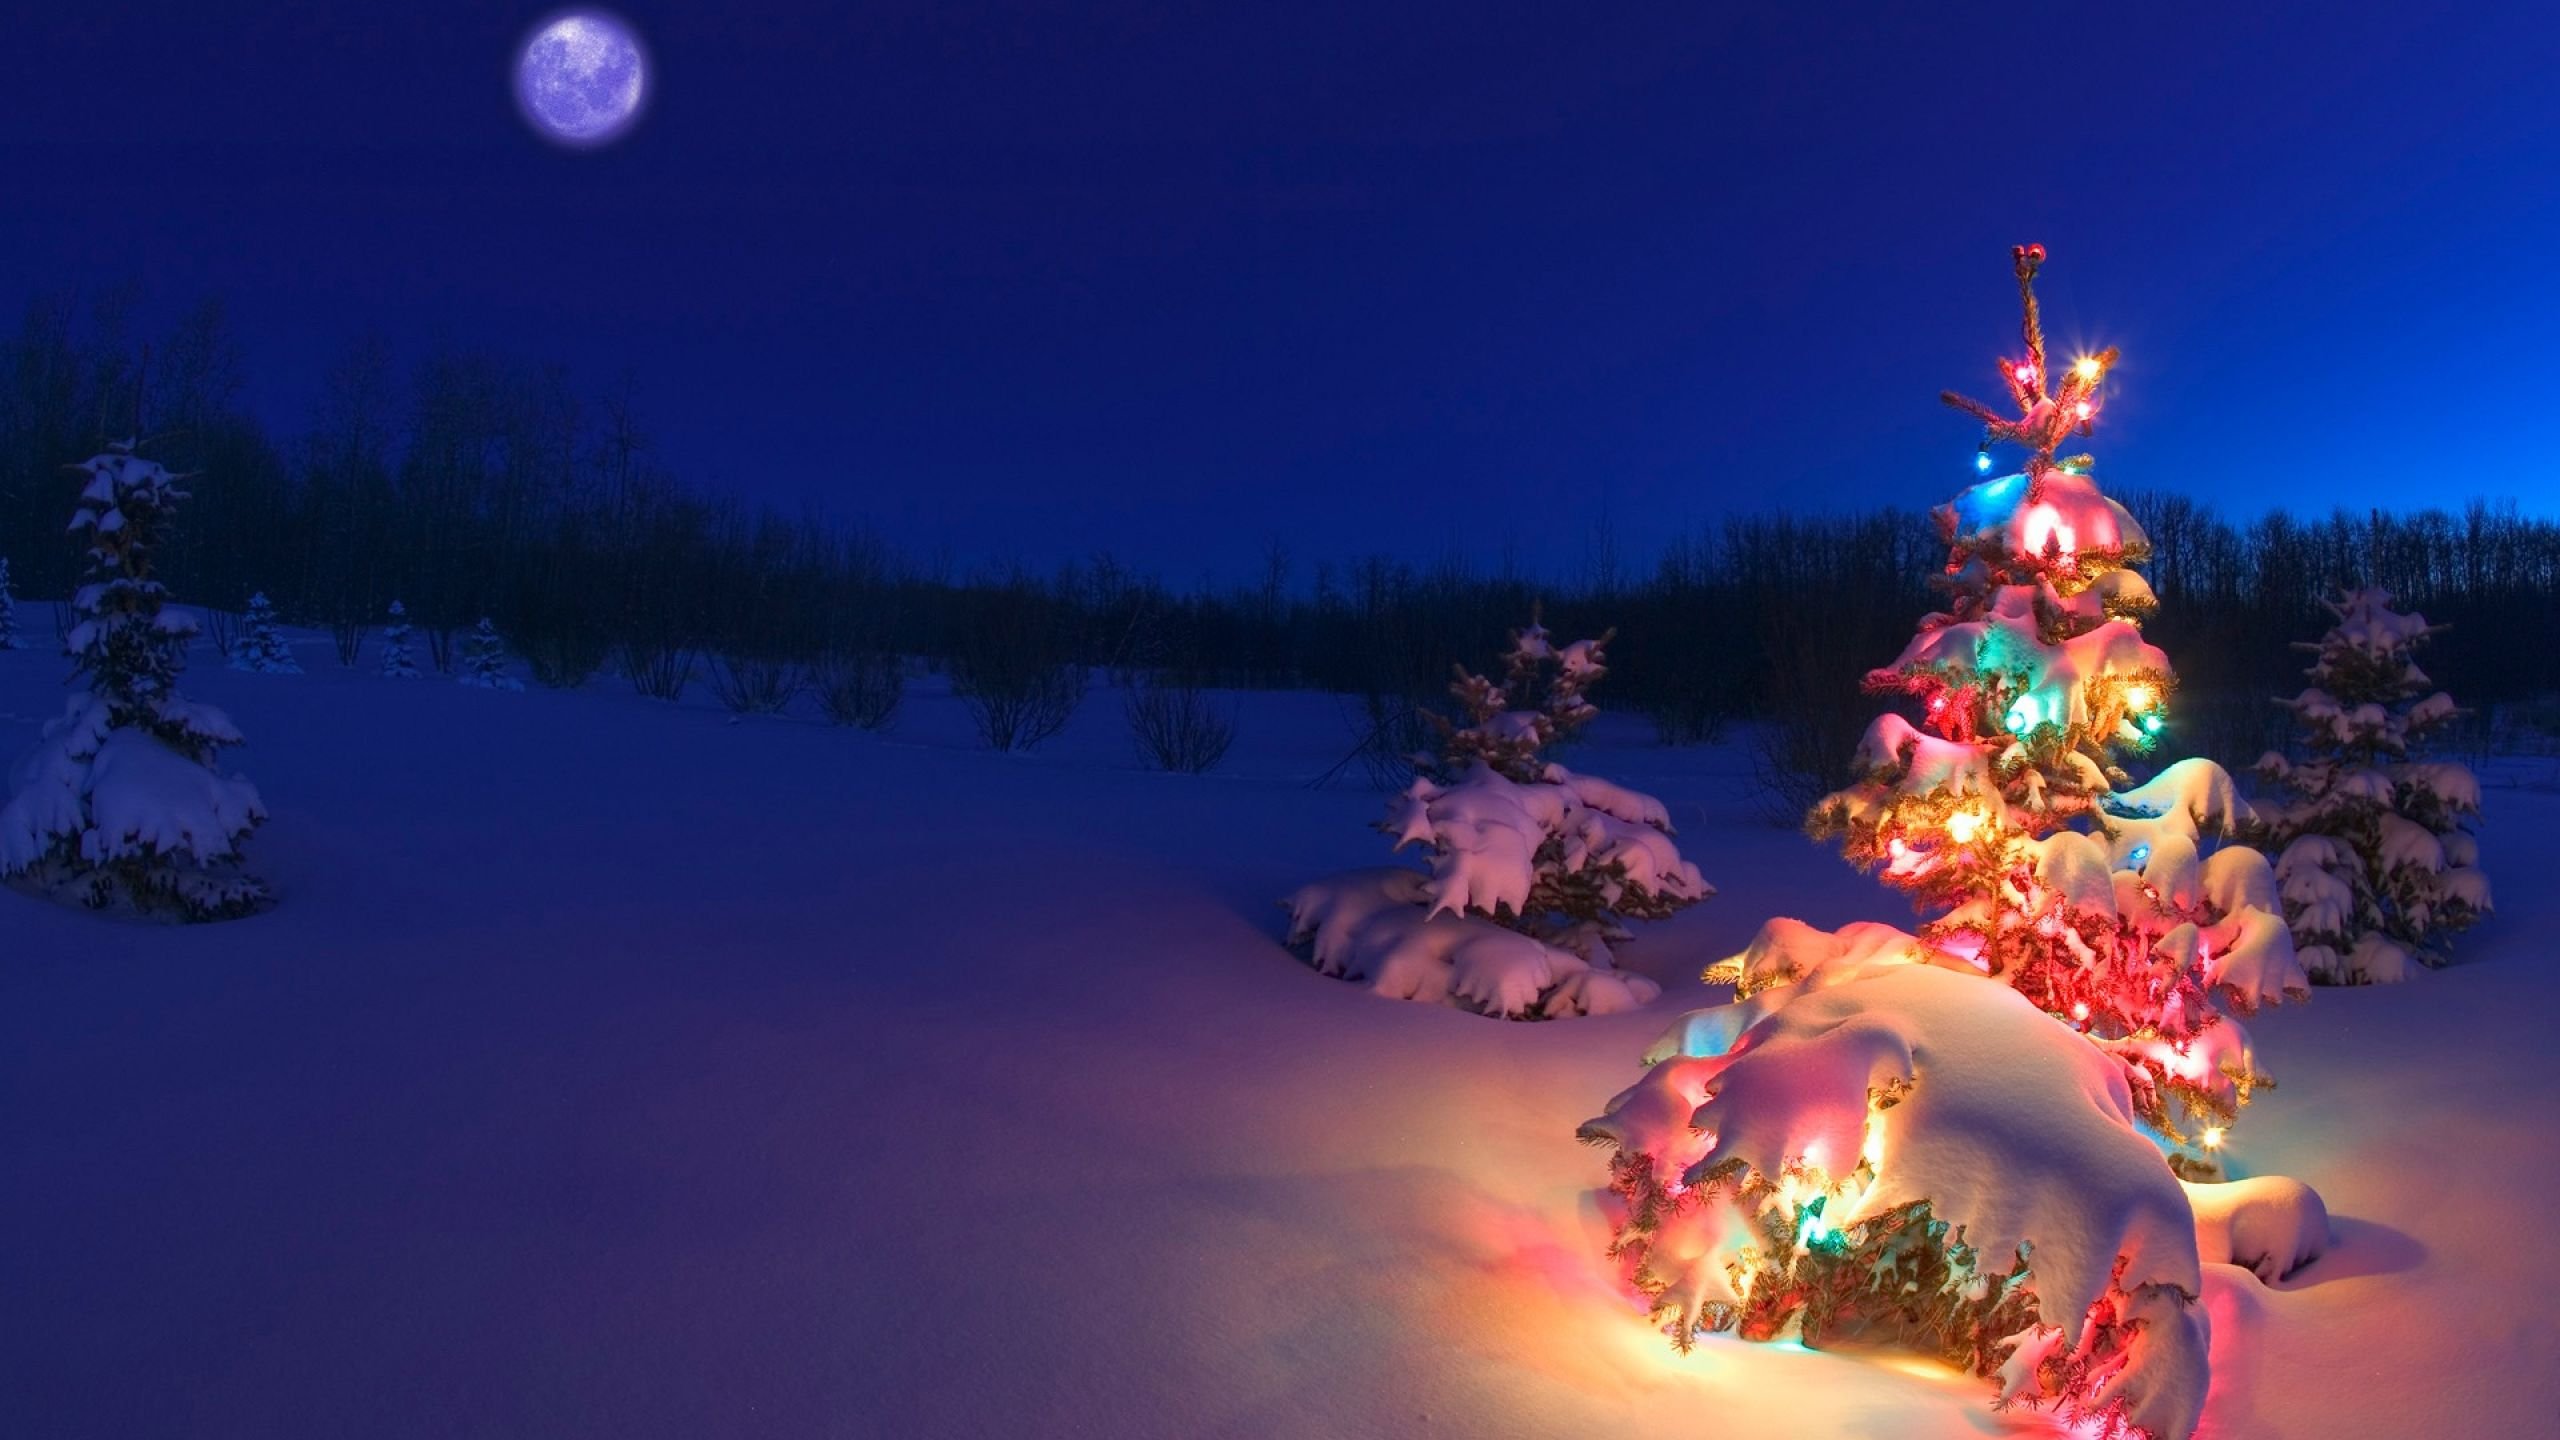 Bạn đang tìm kiếm hình nền Giáng sinh để trang trí cho điện thoại hay máy tính của mình? Hãy ghé thăm trang web của chúng tôi để tải xuống những hình nền đầy màu sắc và âm nhạc Giáng sinh. Chắc chắn rằng bạn sẽ tìm thấy sự ấm áp và hạnh phúc khi chọn một hình nền yêu thích!